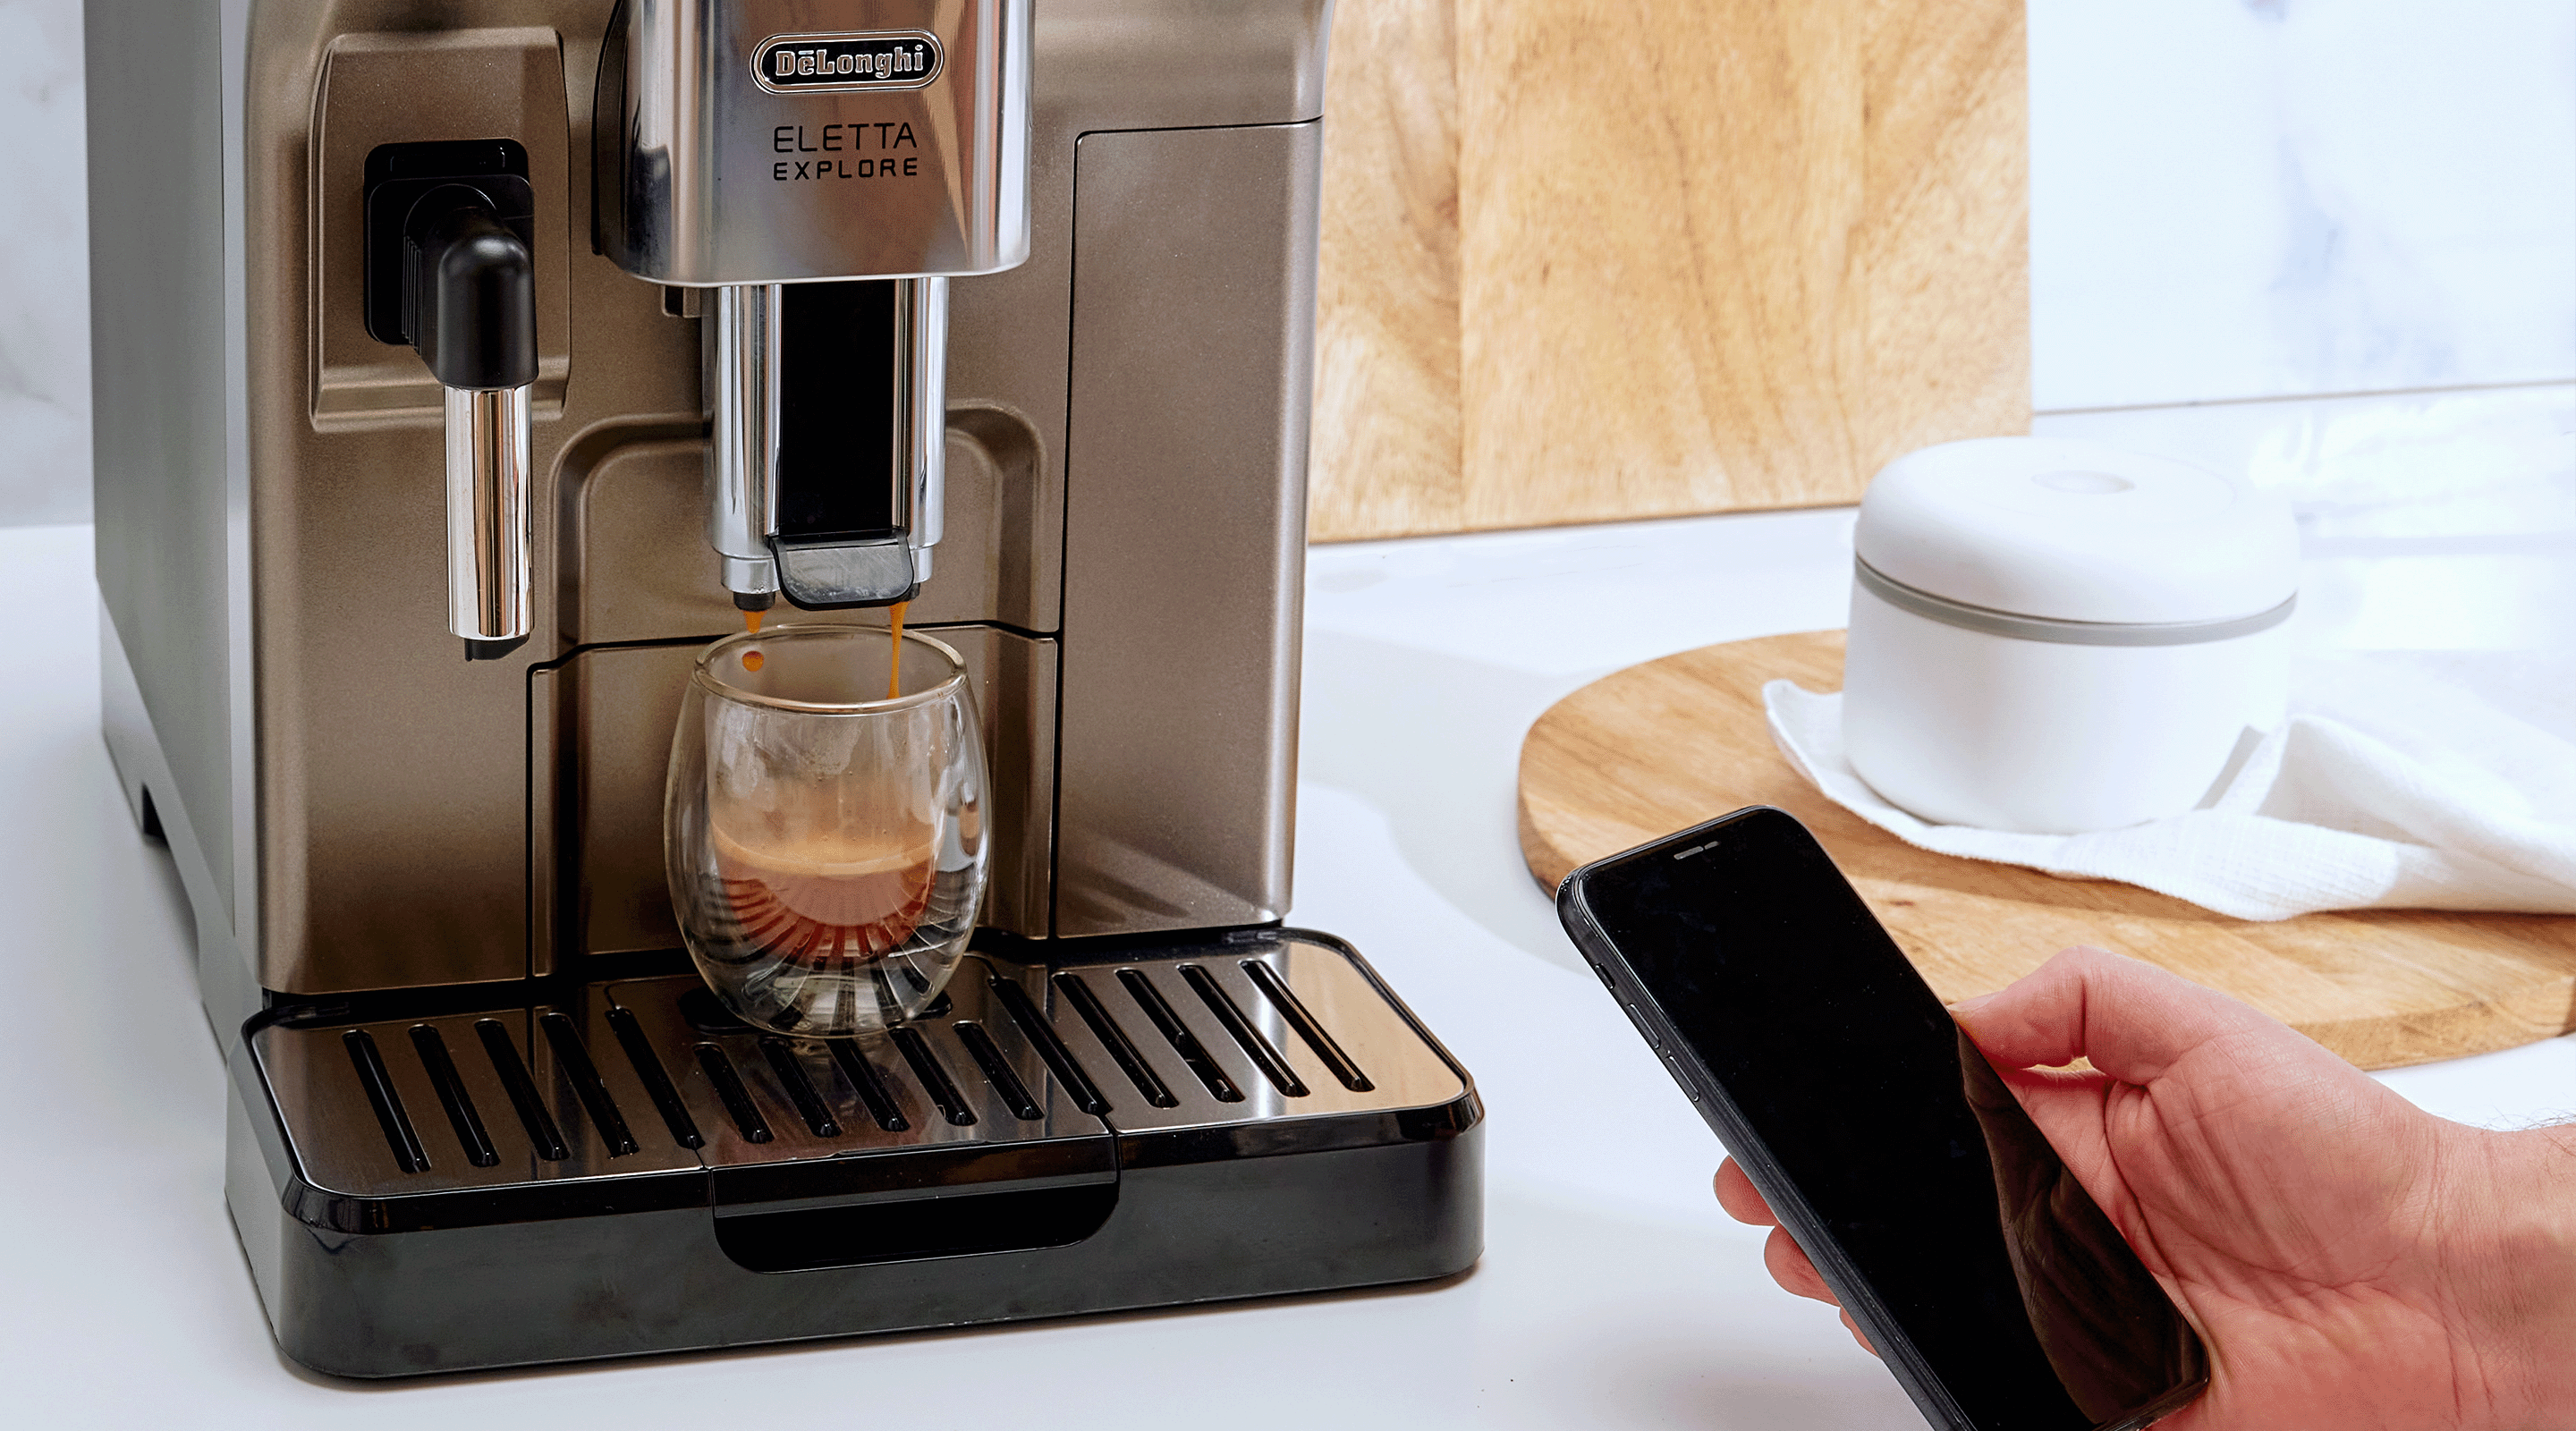 De'longhi Eletta Explore Automatic Coffee Machine with Cold Brew